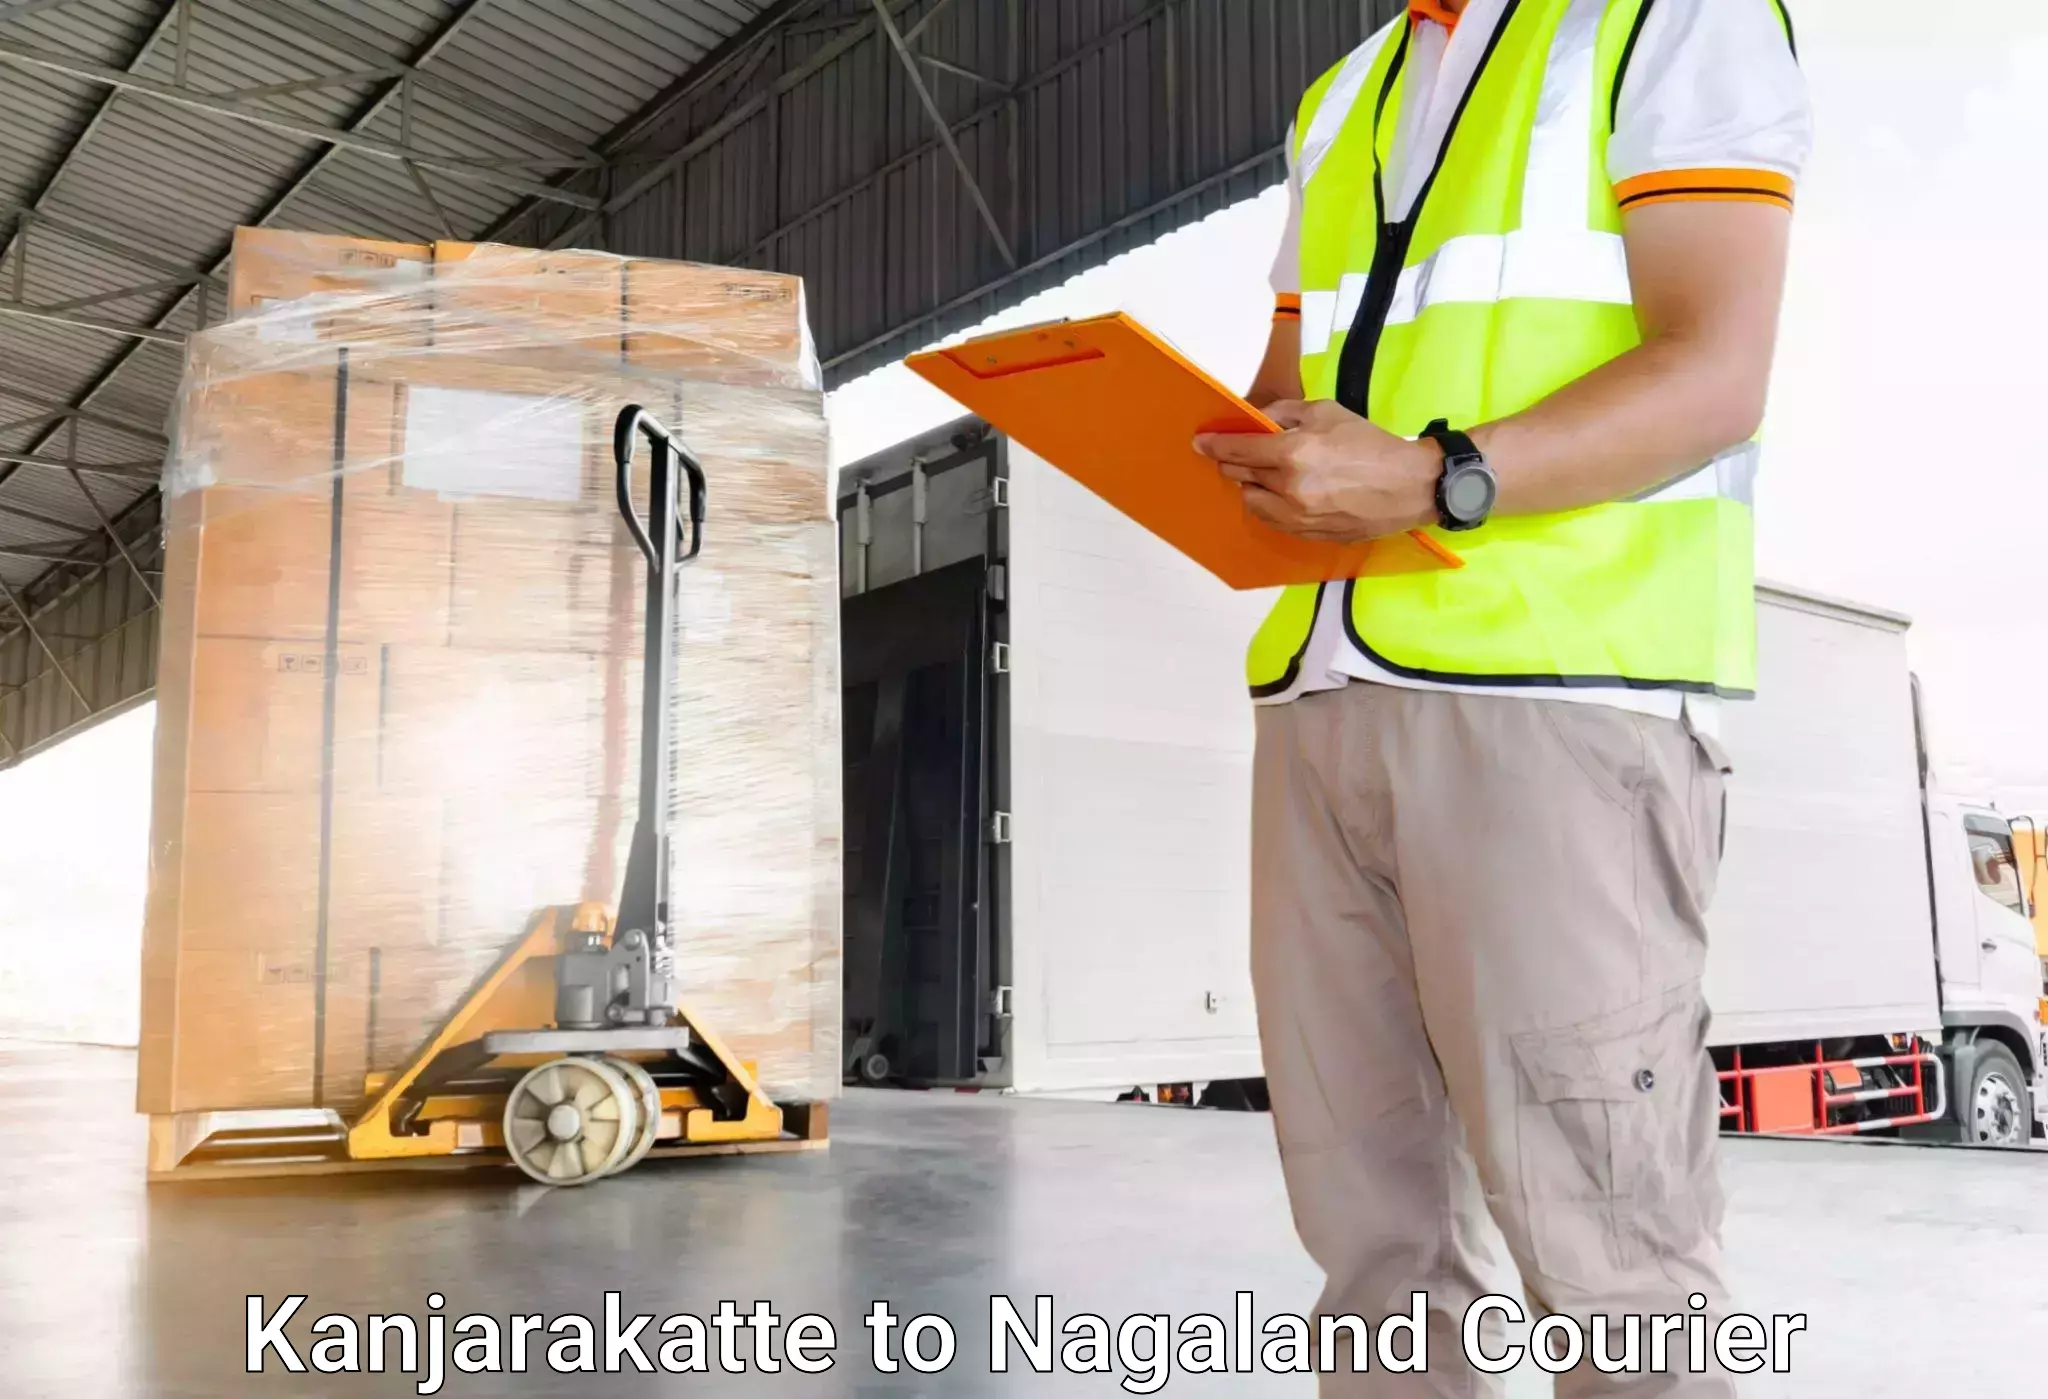 Urgent luggage shipment Kanjarakatte to NIT Nagaland